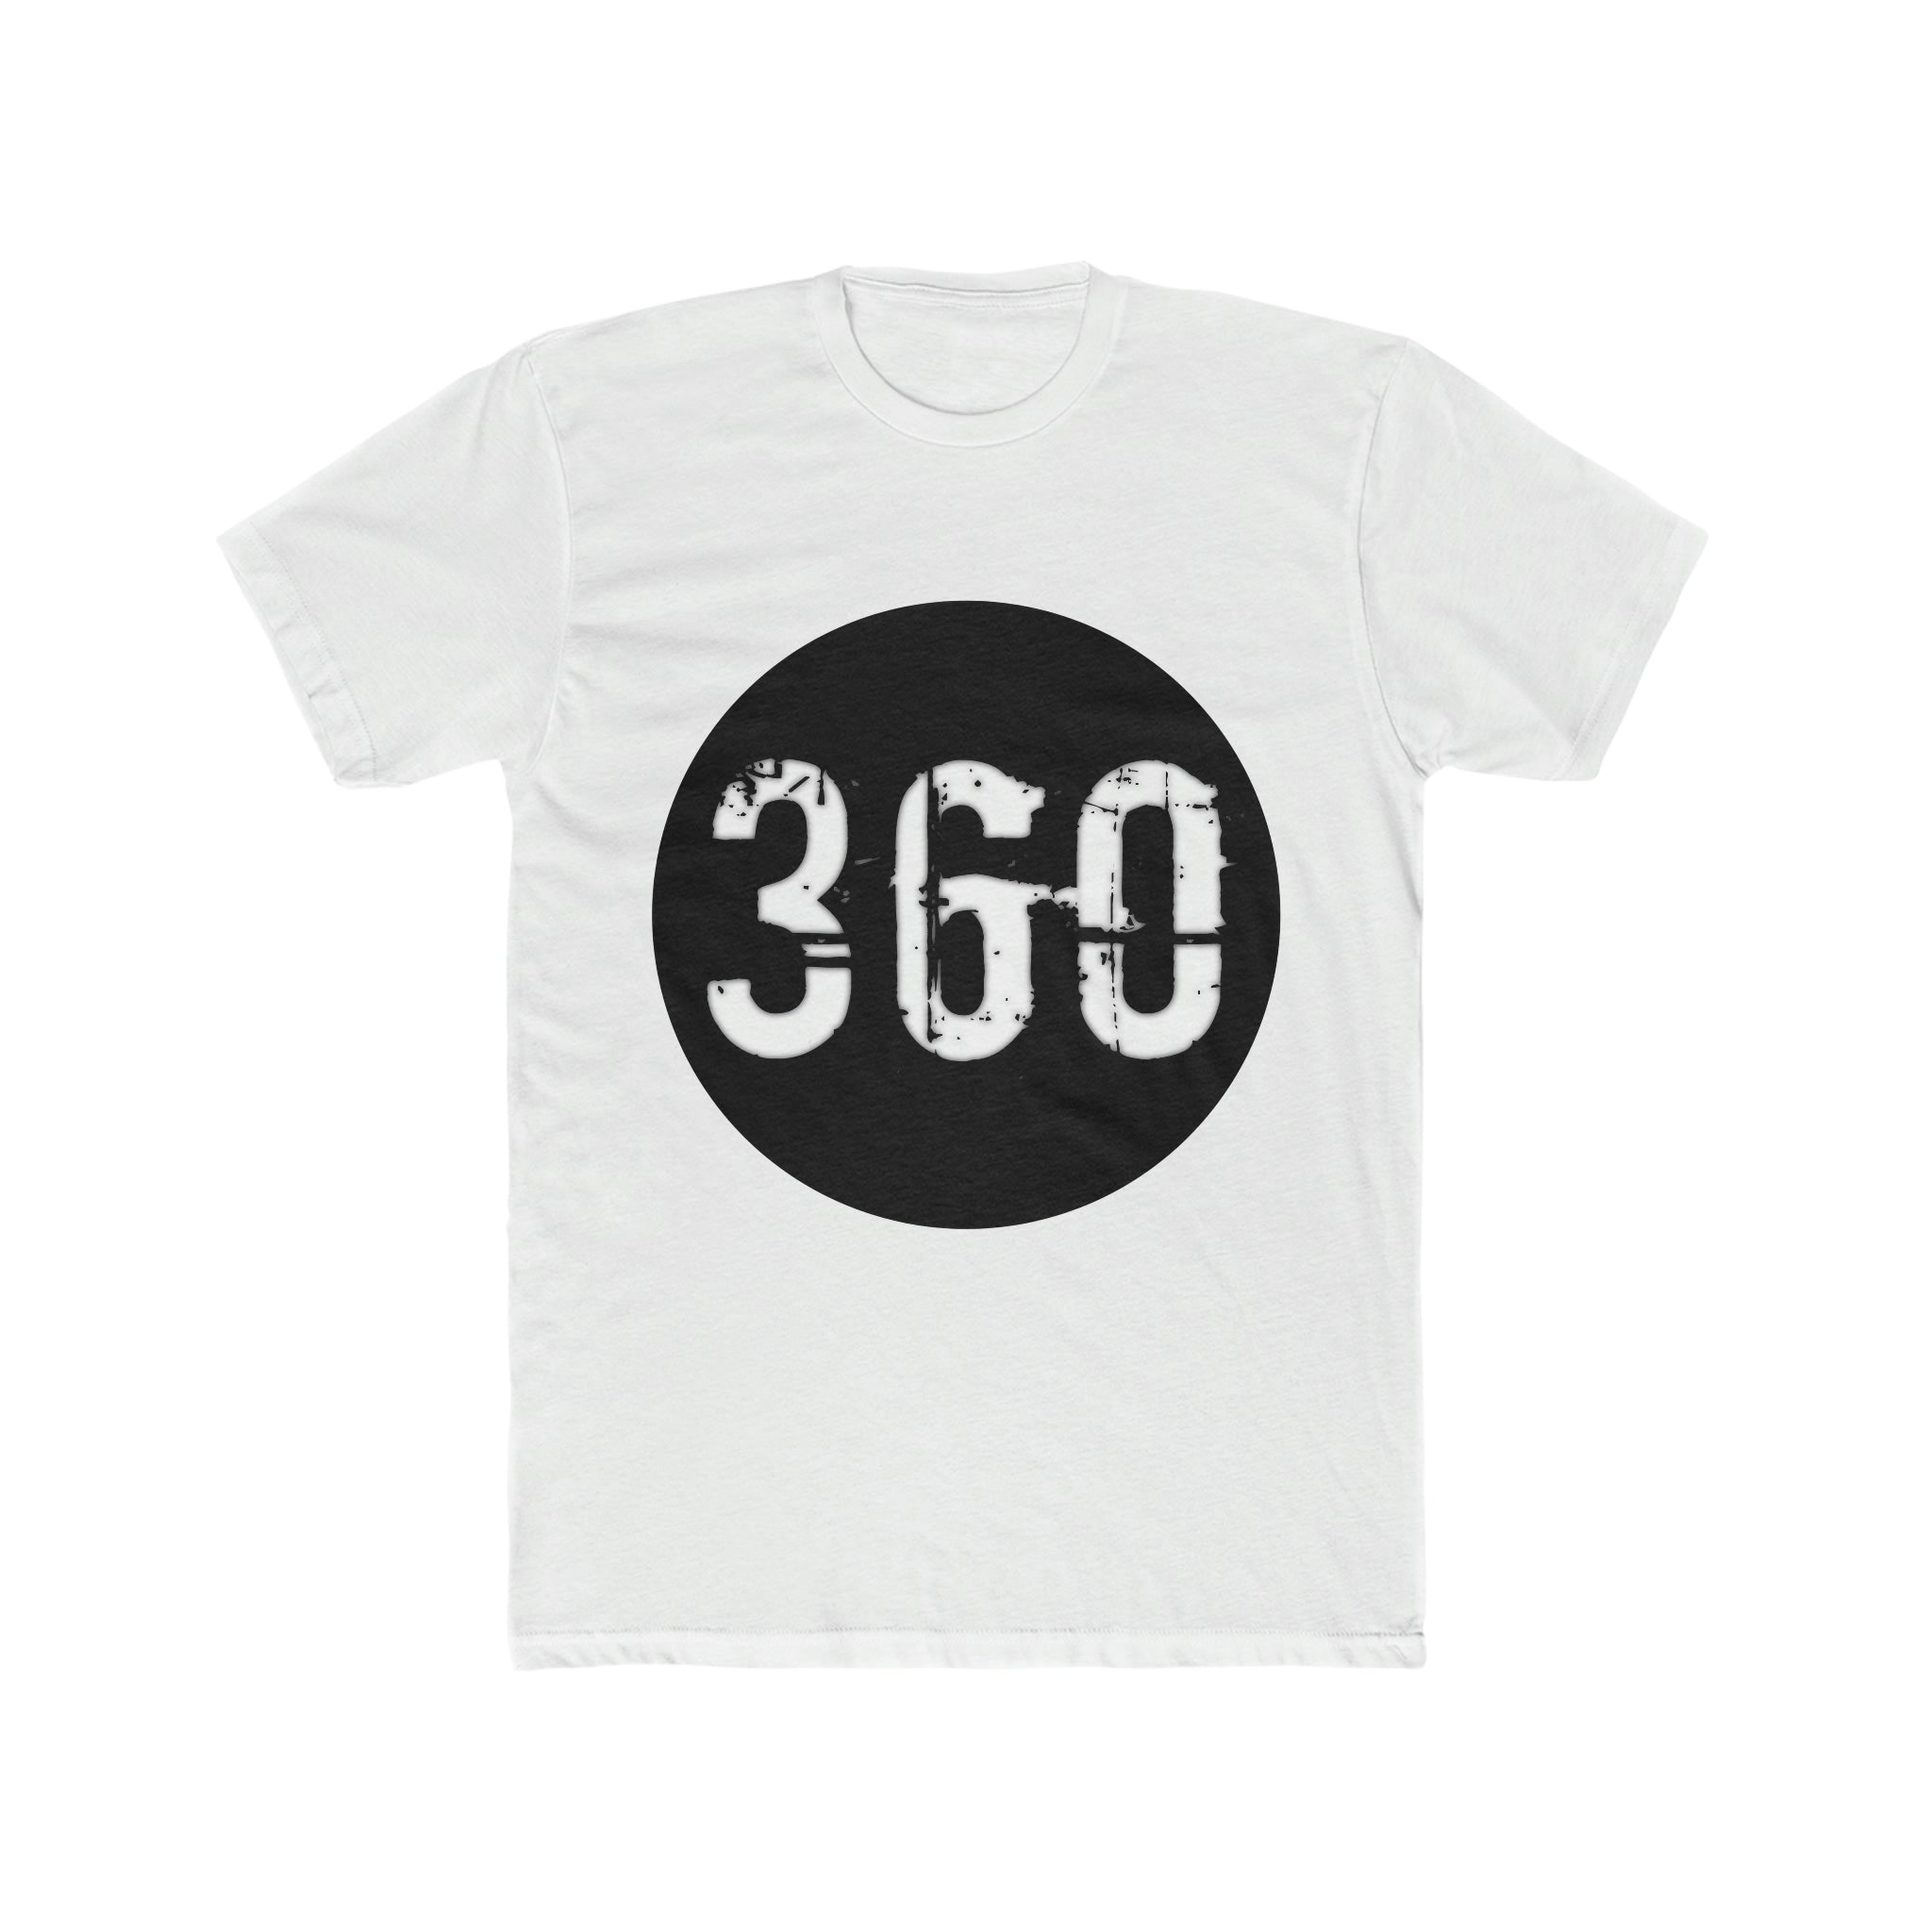 360 Cotton Crew Tee